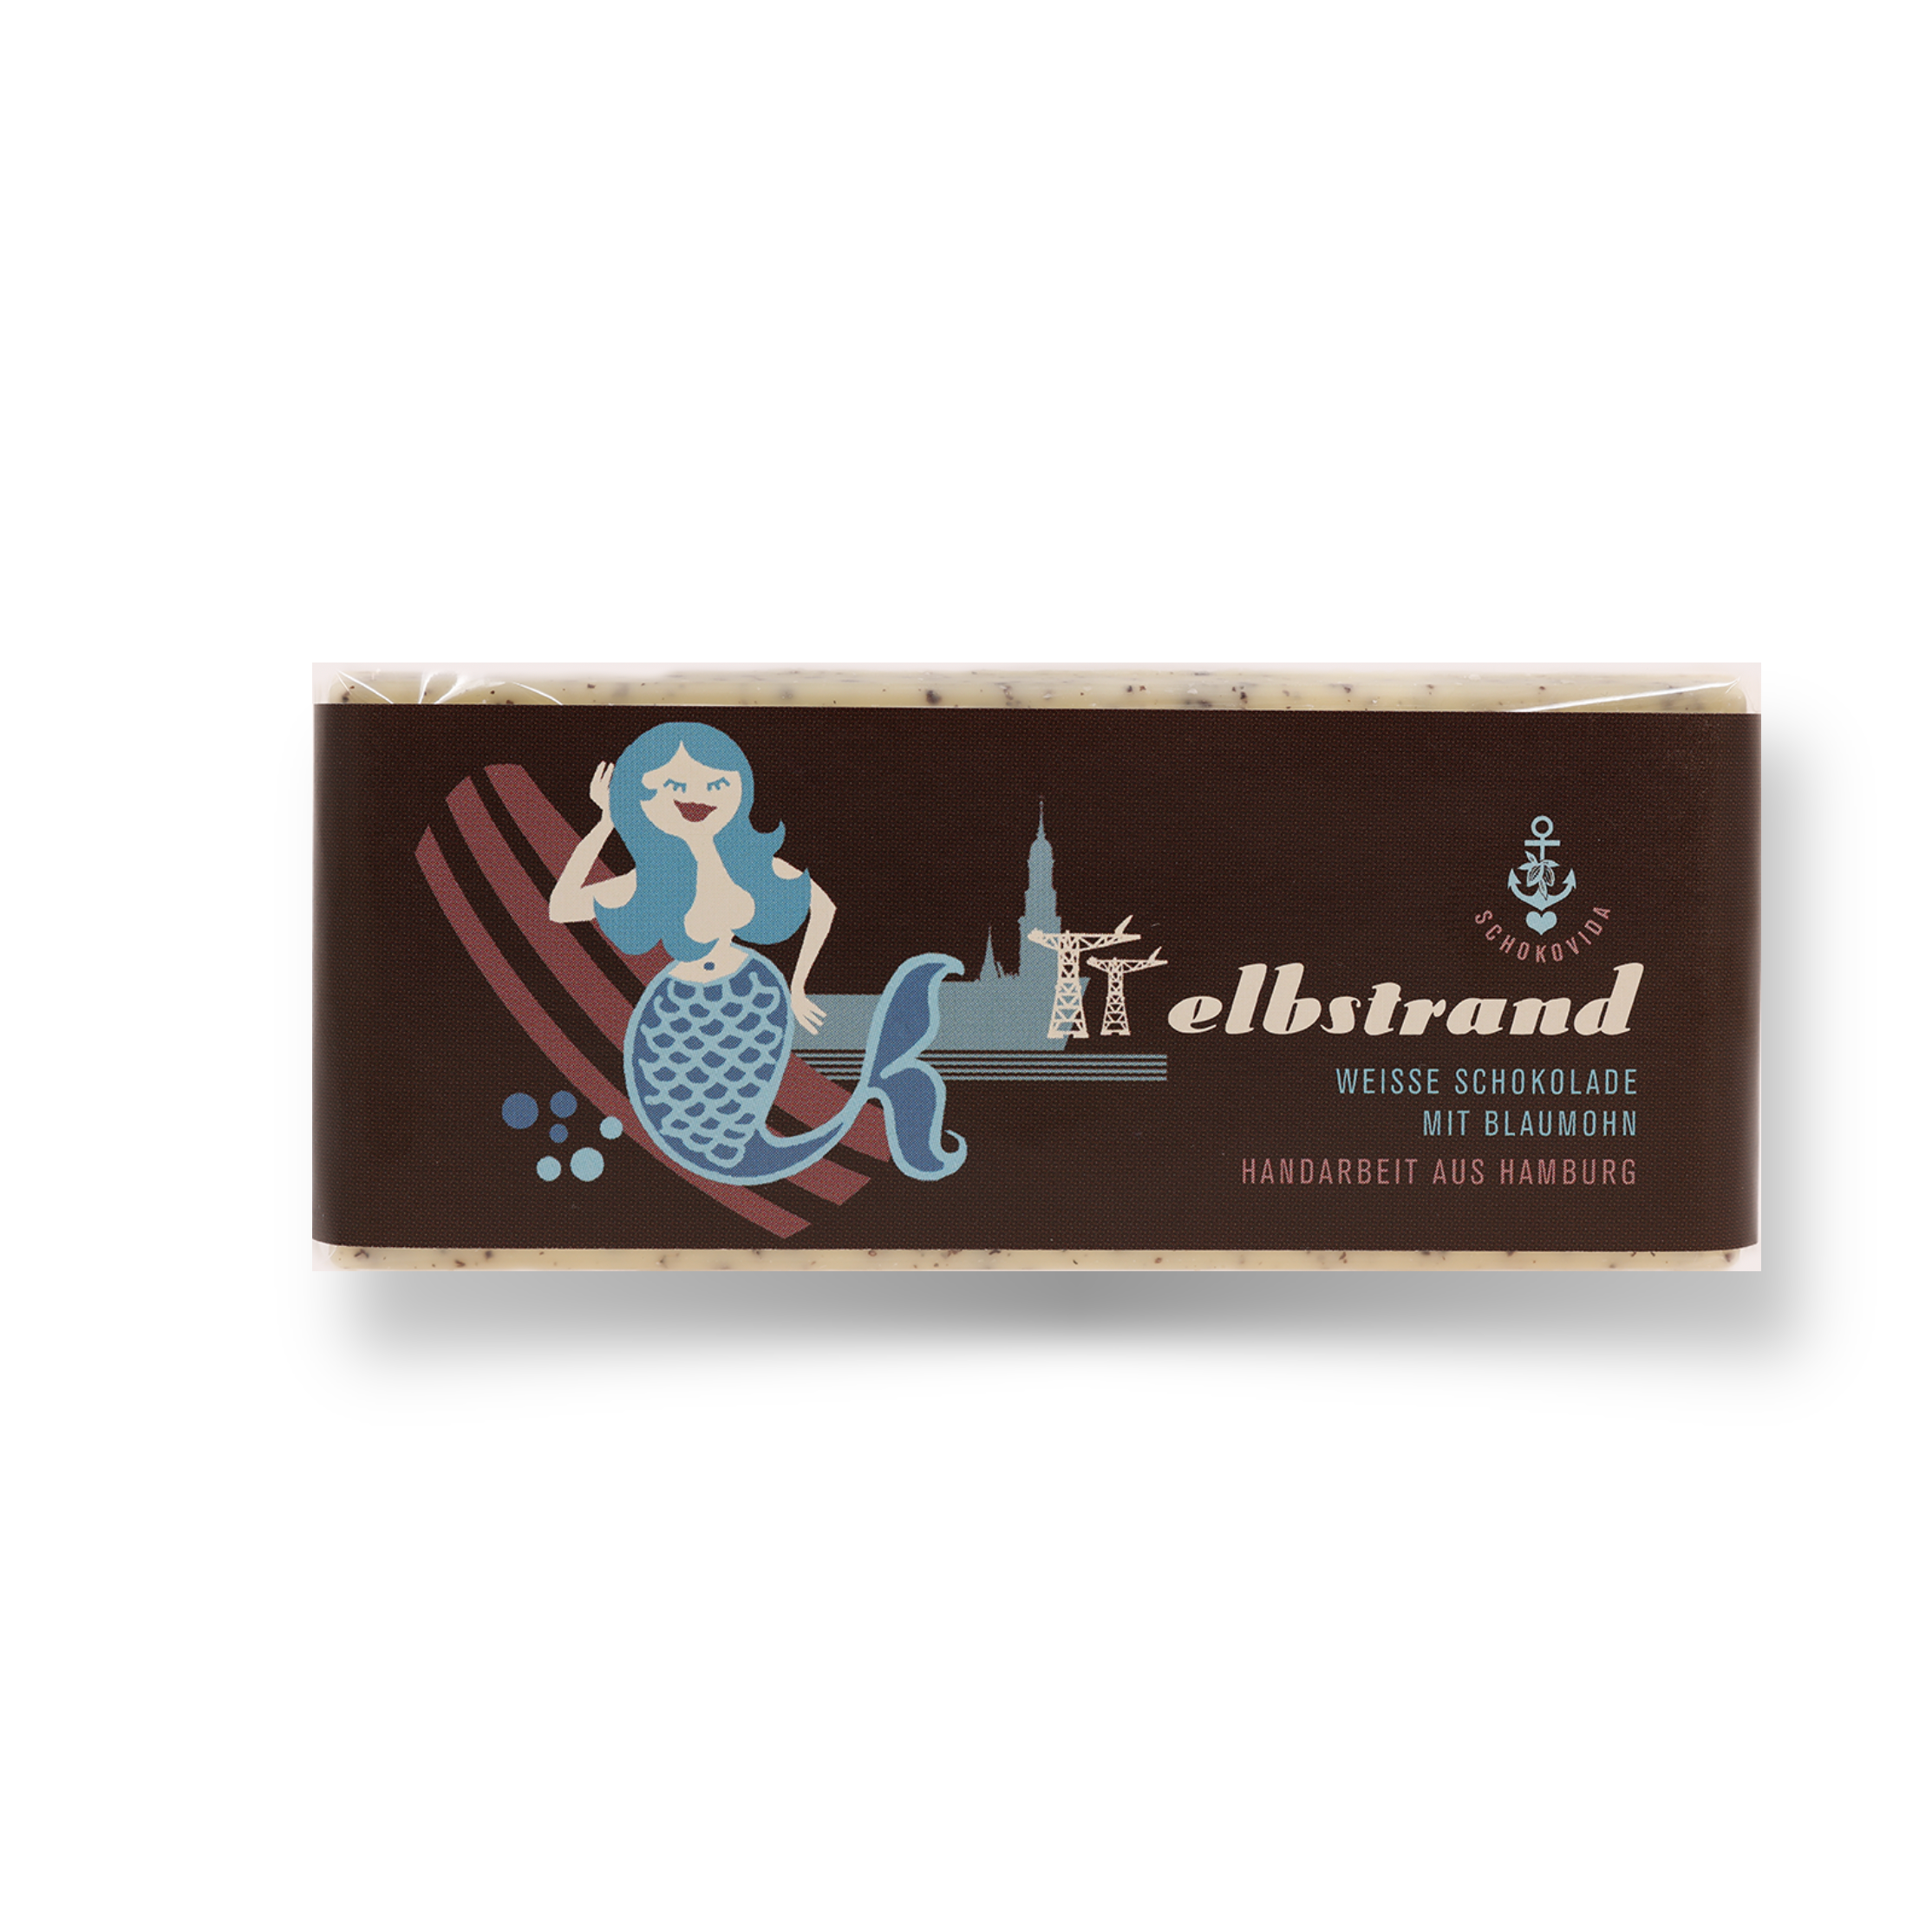 Elbstrand lütt – Weiße Schokolade mit Blaumohn